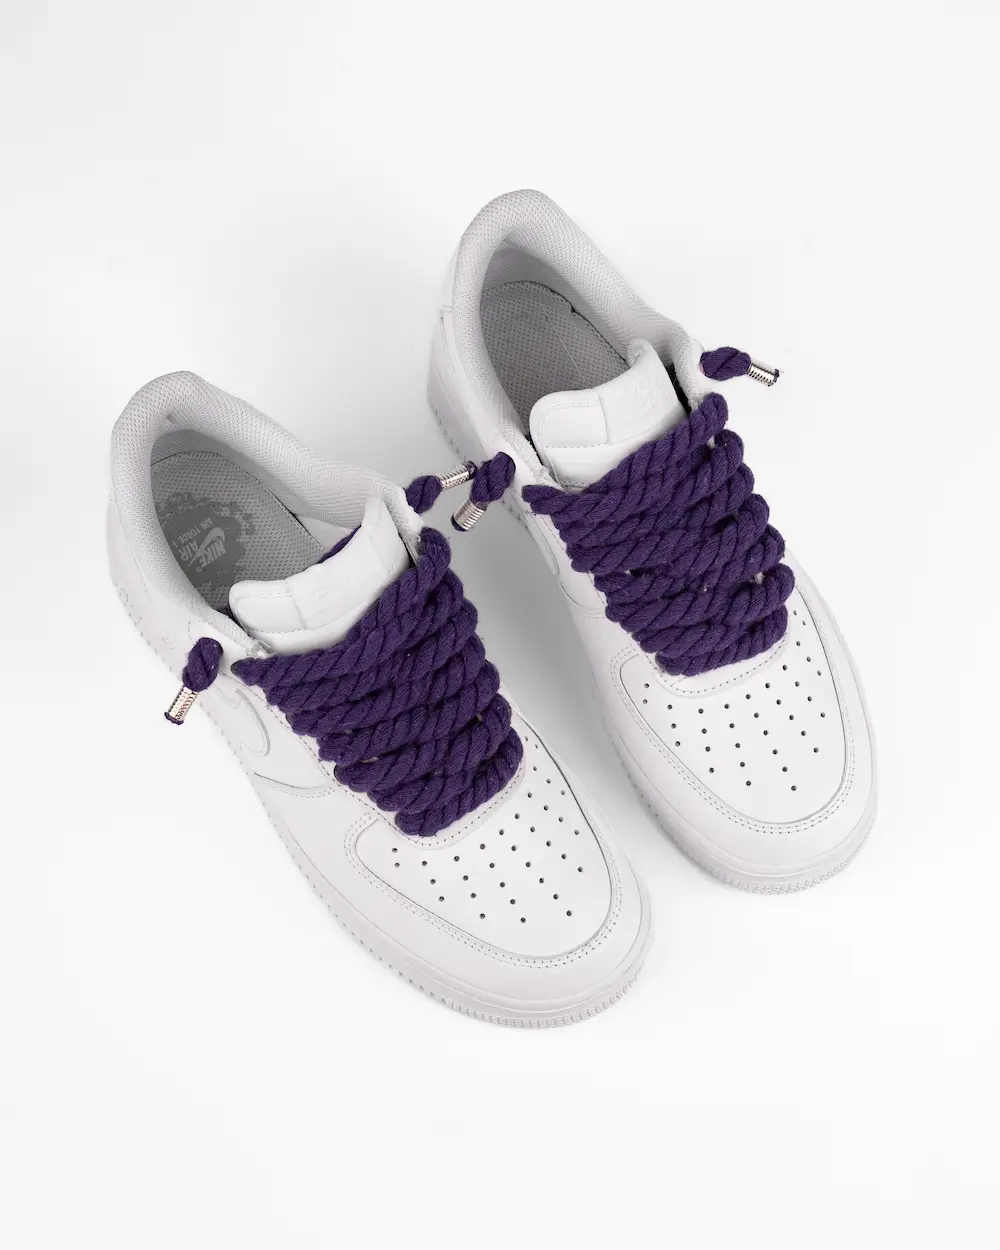 Nike Air Force 1 bianca personalizzata con lacci in corda viola